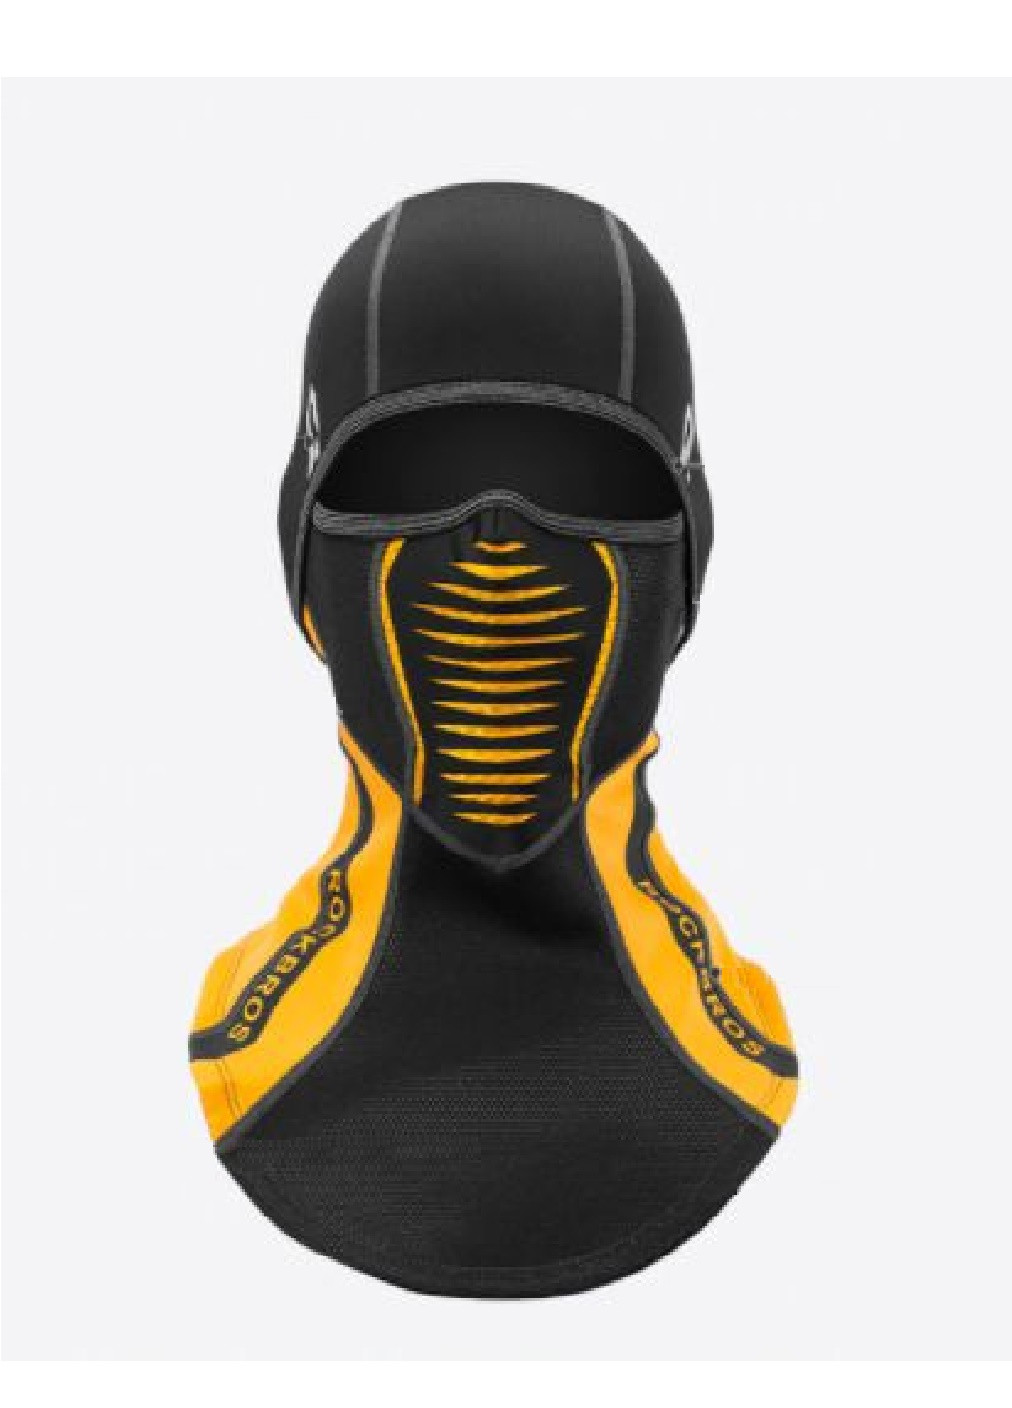 Francesco Marconi термо маска флисовая балаклава зимний бафф шарф подшлемник лыжная шапка (472823-prob) черно желтая логотип комбинированный кэжуал флис производство - Китай